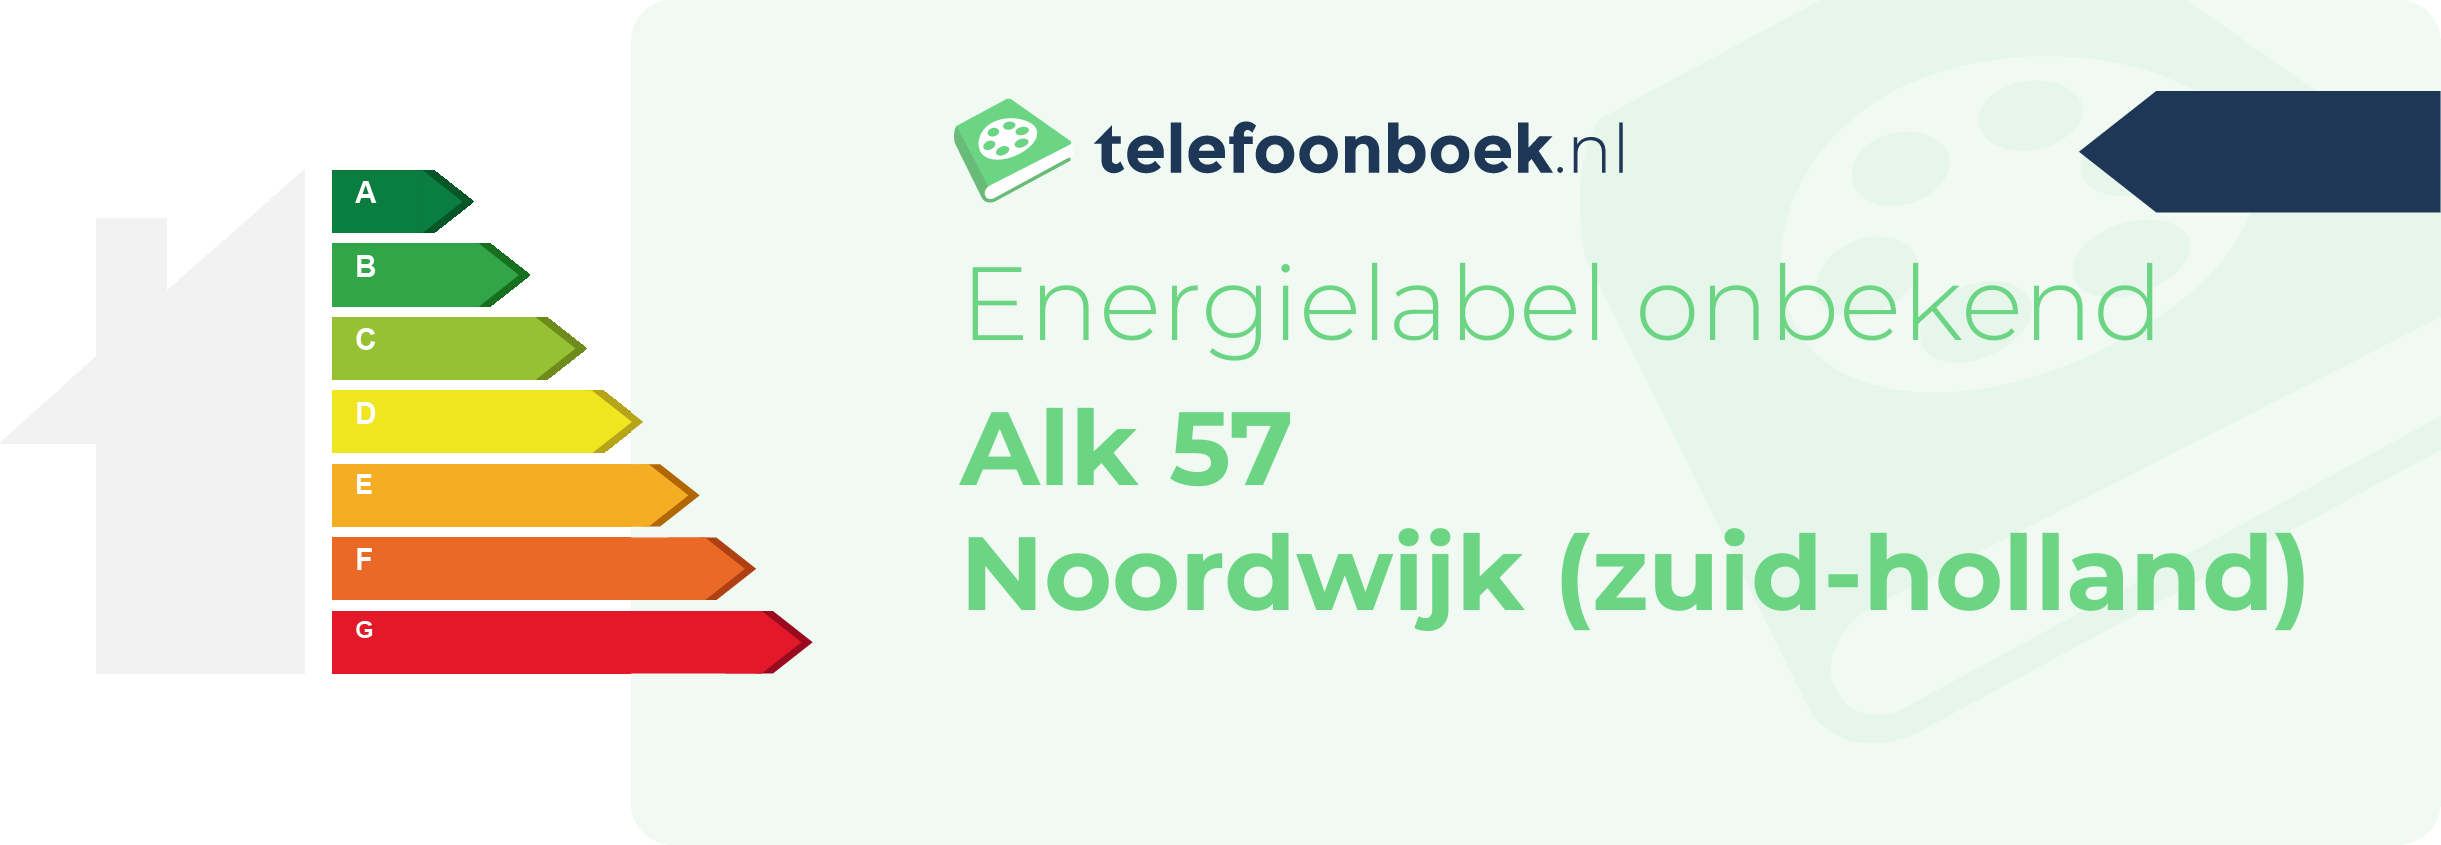 Energielabel Alk 57 Noordwijk (Zuid-Holland)